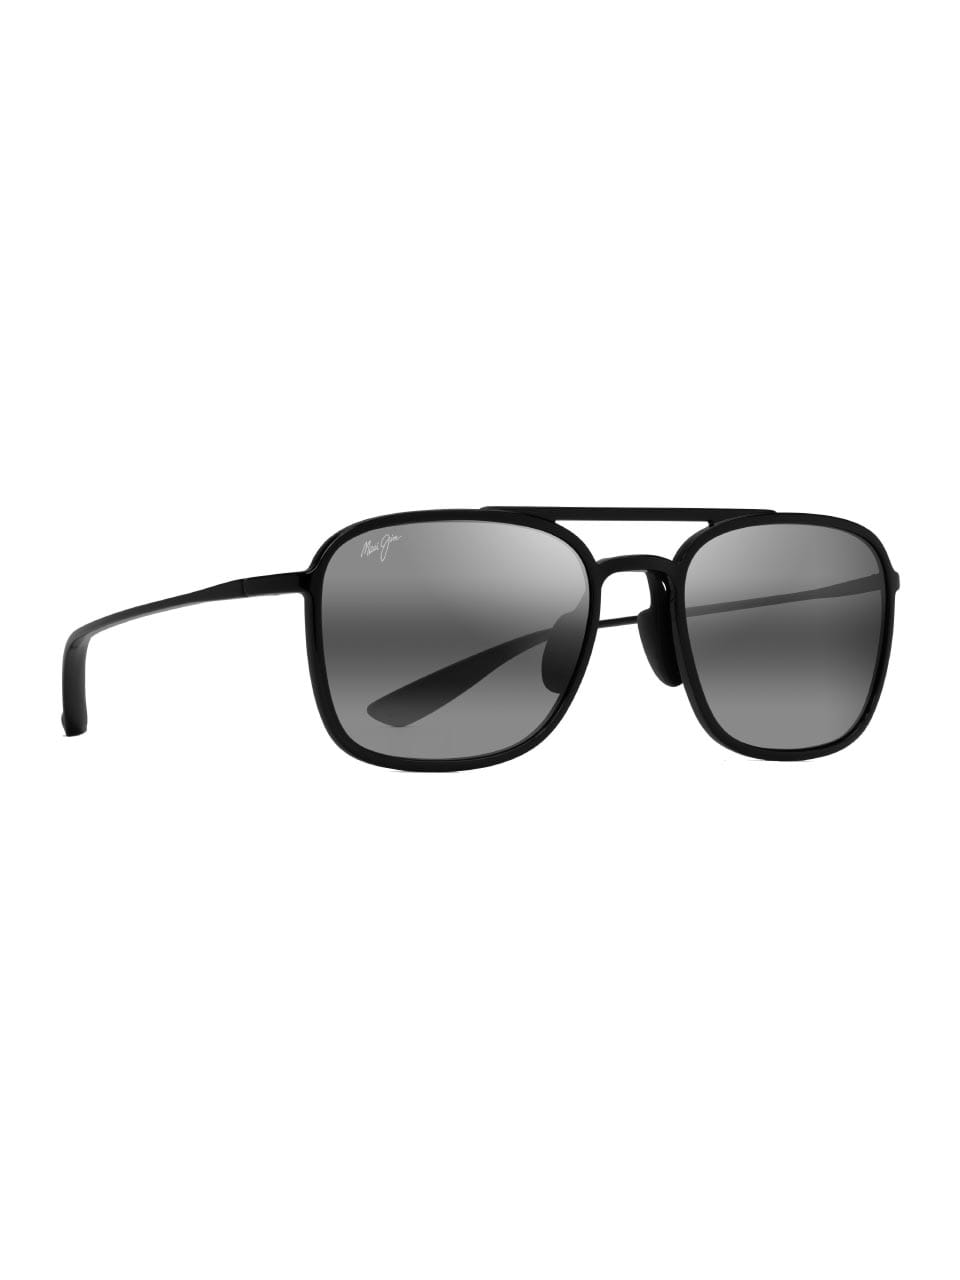 Jim - designer solbriller - bestil Maui Jim lige her